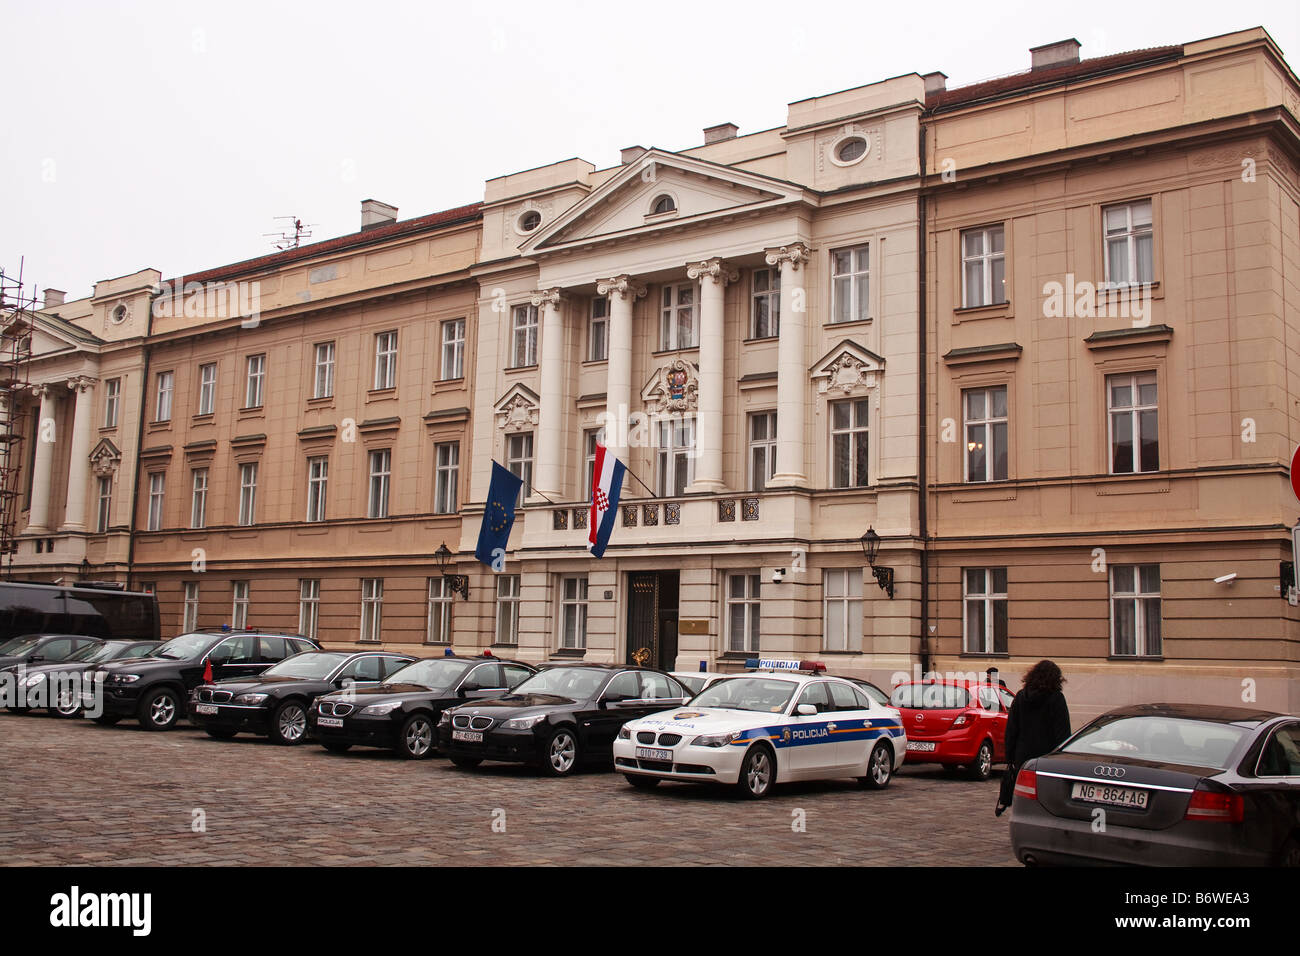 KROATIEN, ZAGREB. Das kroatische Parlament (Hrvatski Sabor in kroatischer Sprache) in Zagreb. Stockfoto